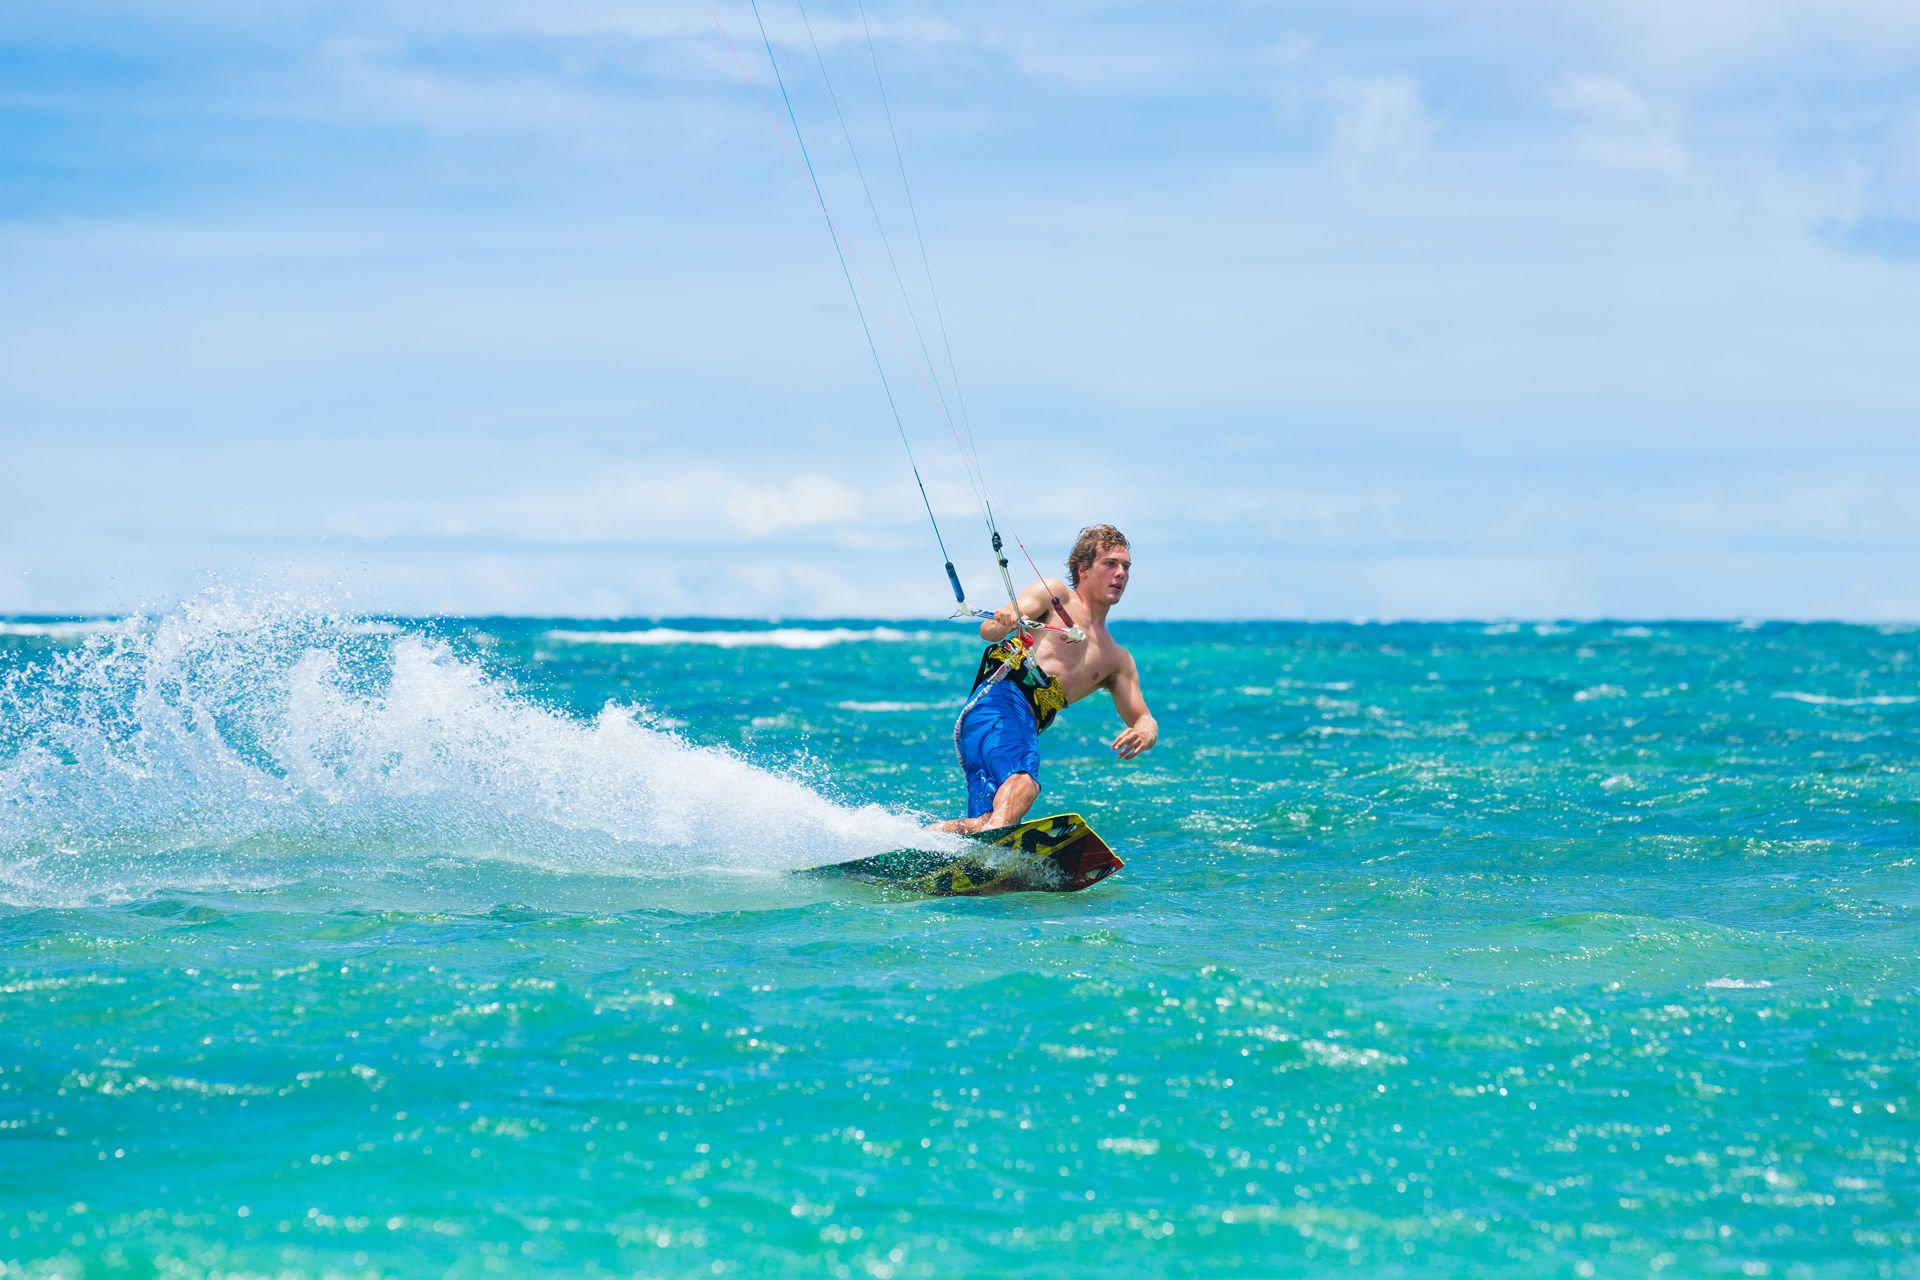 Kite Boarding, Fun in the ocean, Extreme Sport, Leukada